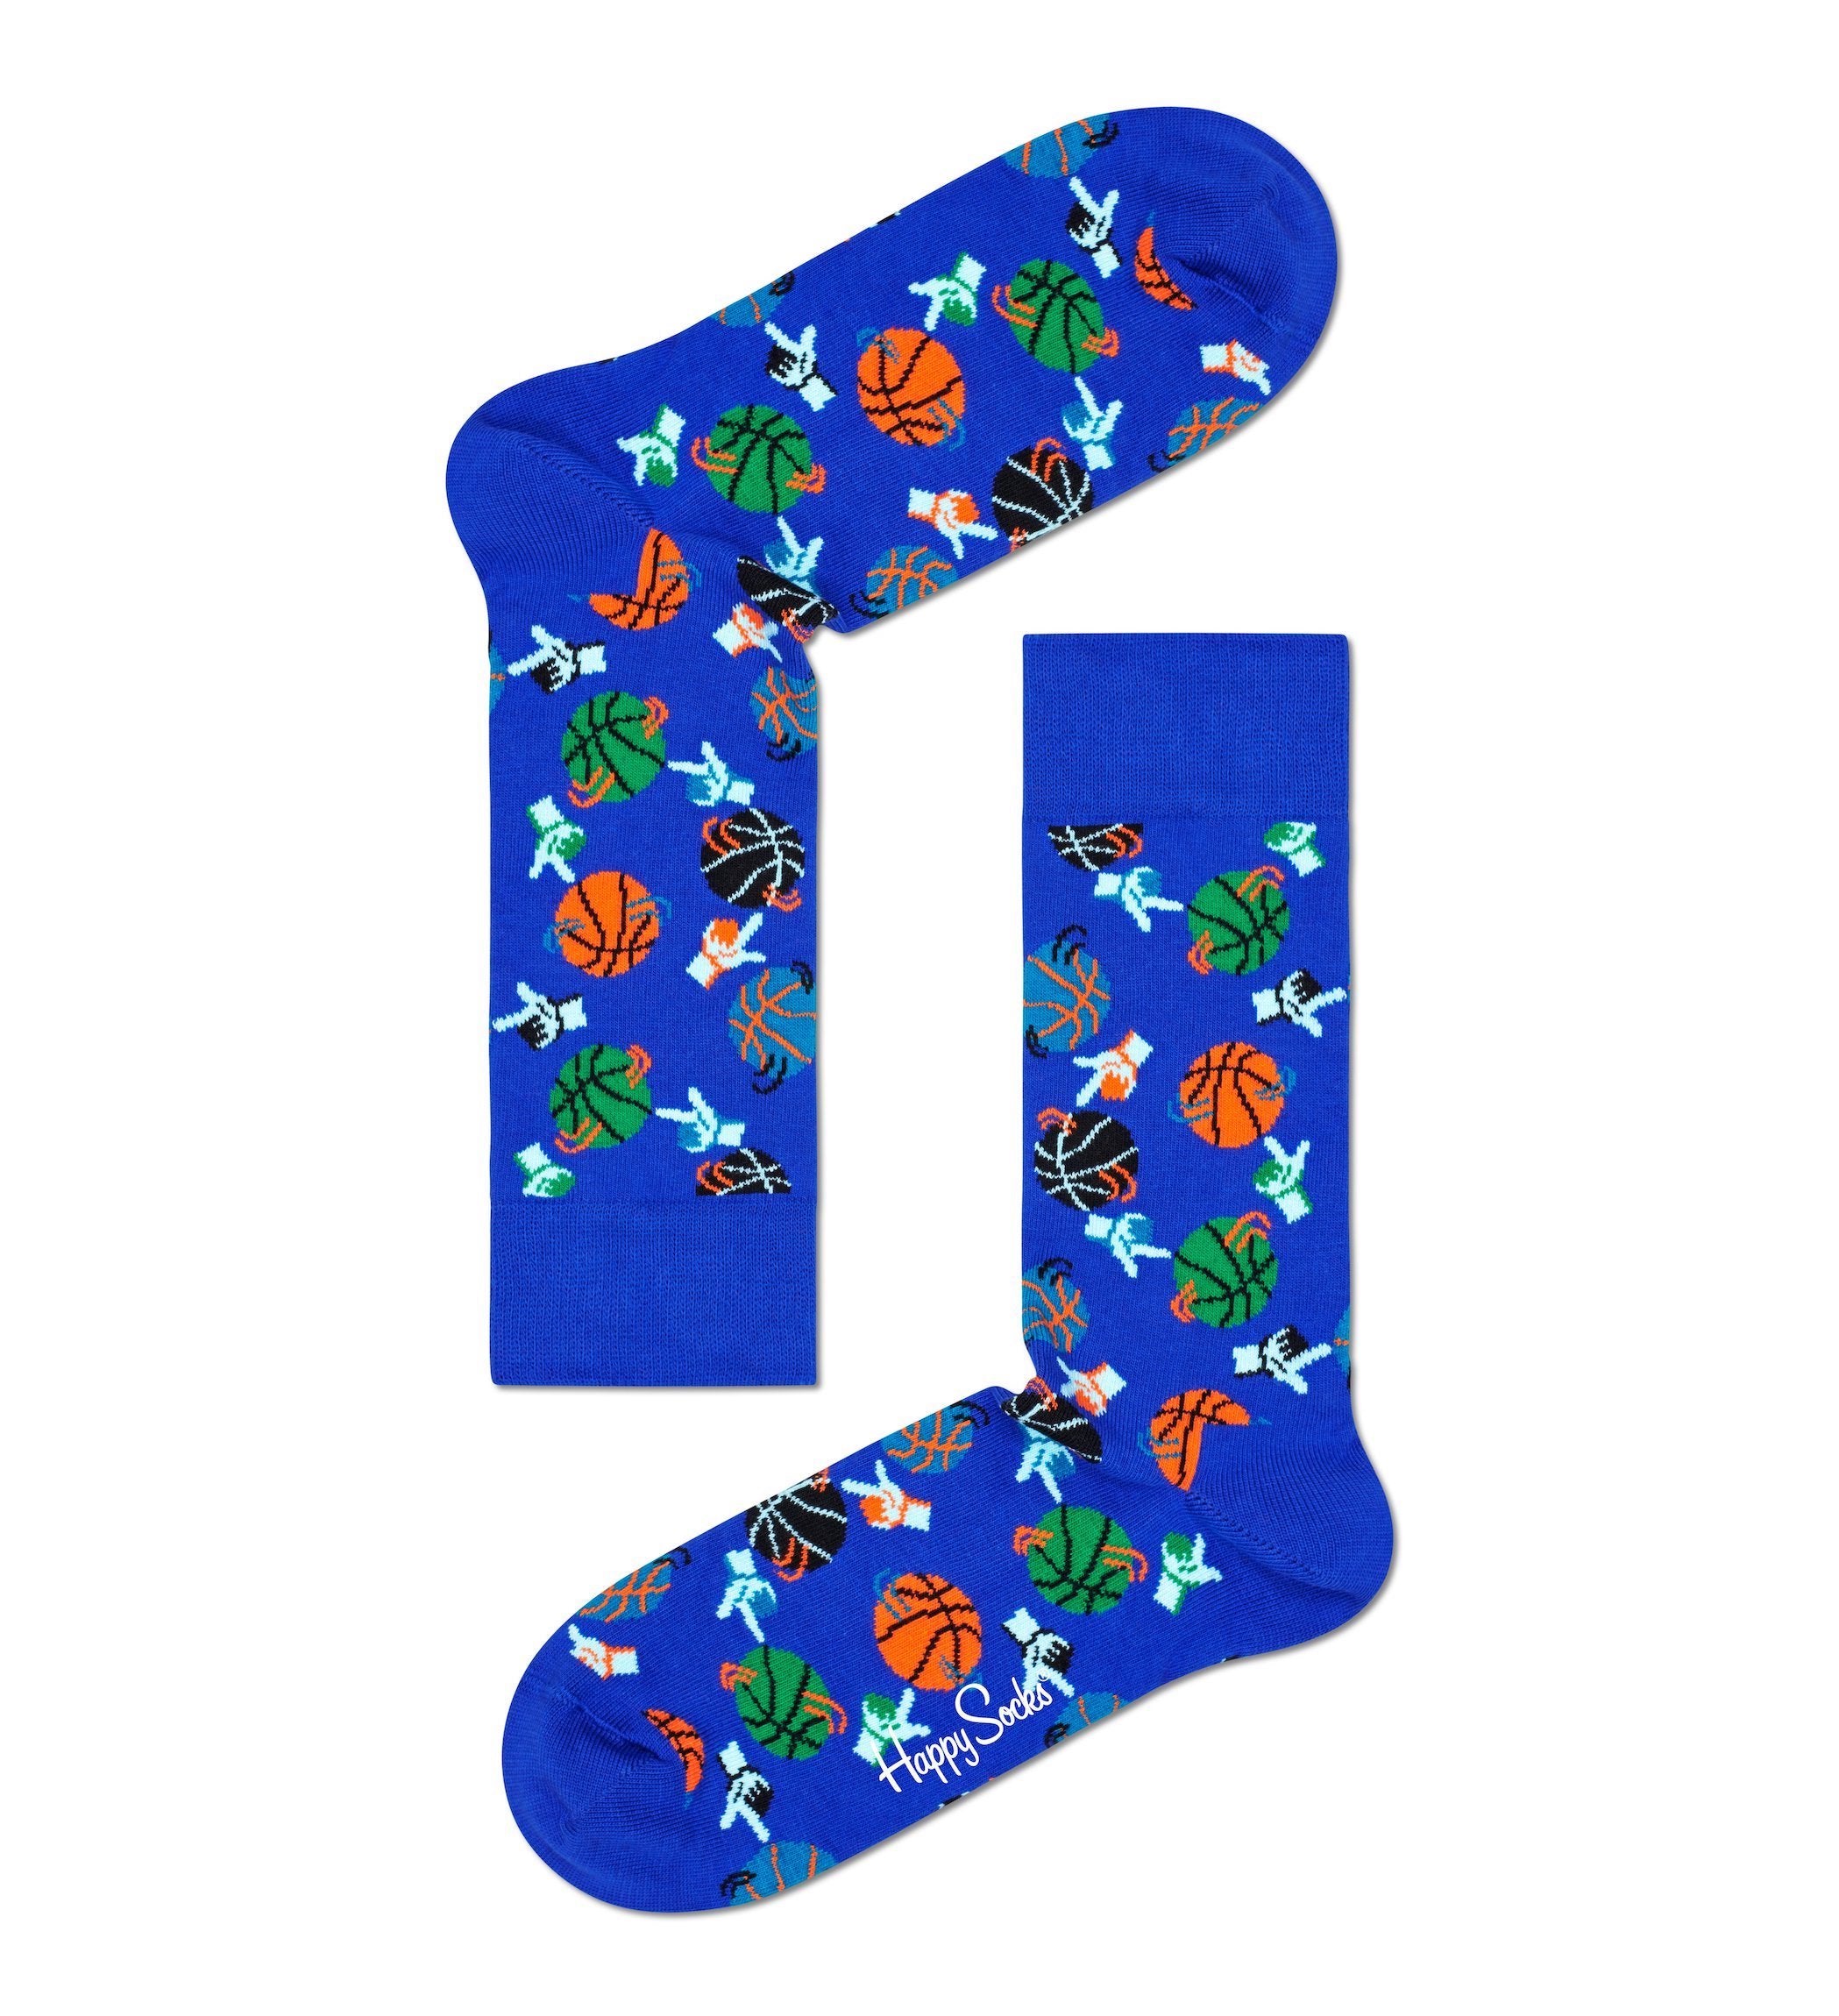 Modré ponožky Happy Socks s basketbalovými míči, vzor Basketball